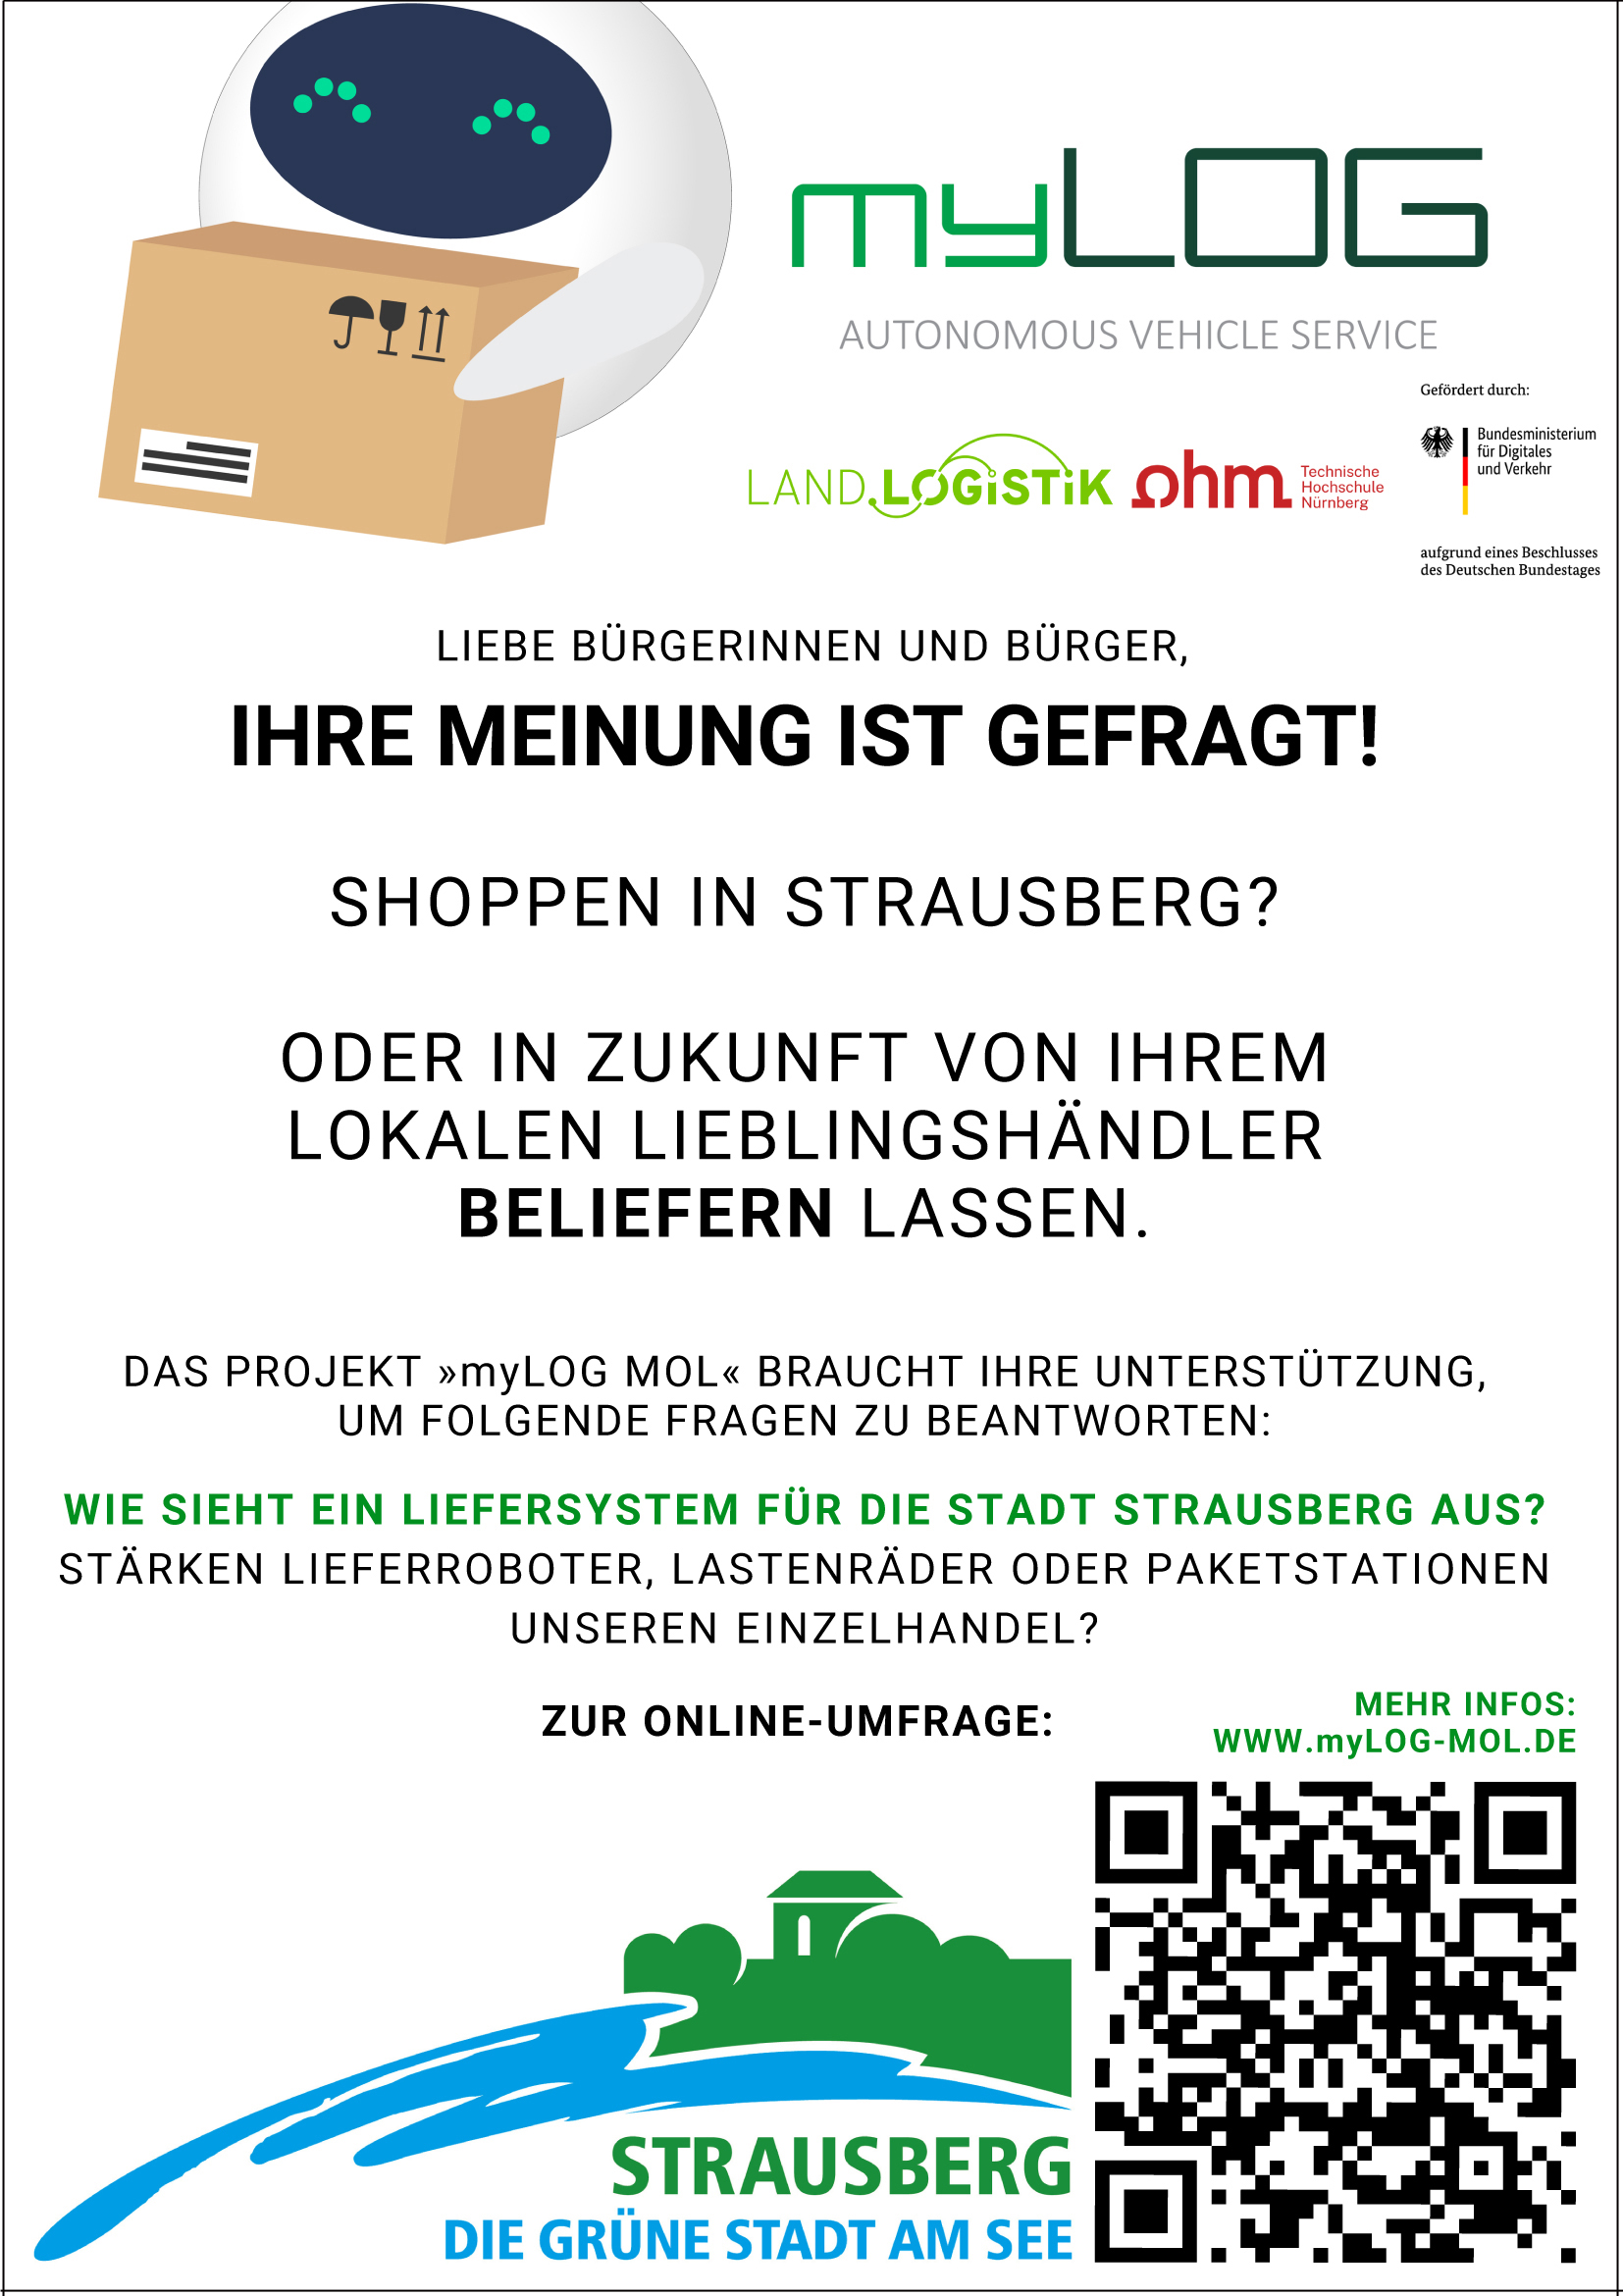 Plakat zur Umfrage der LandLogistik GmbH mit Partnern zum Handel in Strausberg